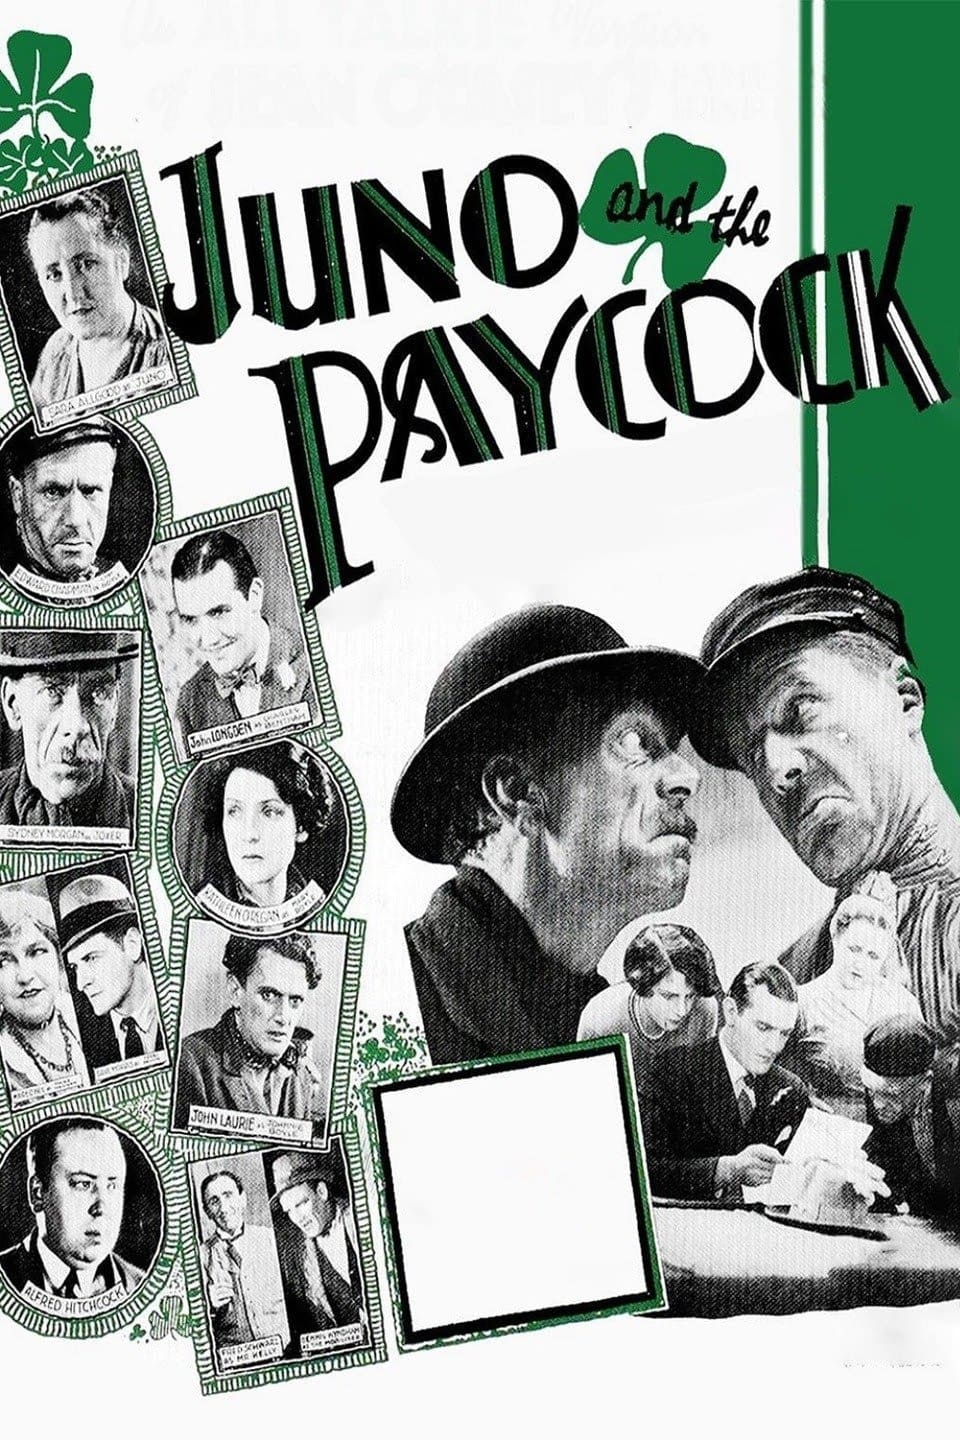 Juno e o Pavão (1930)